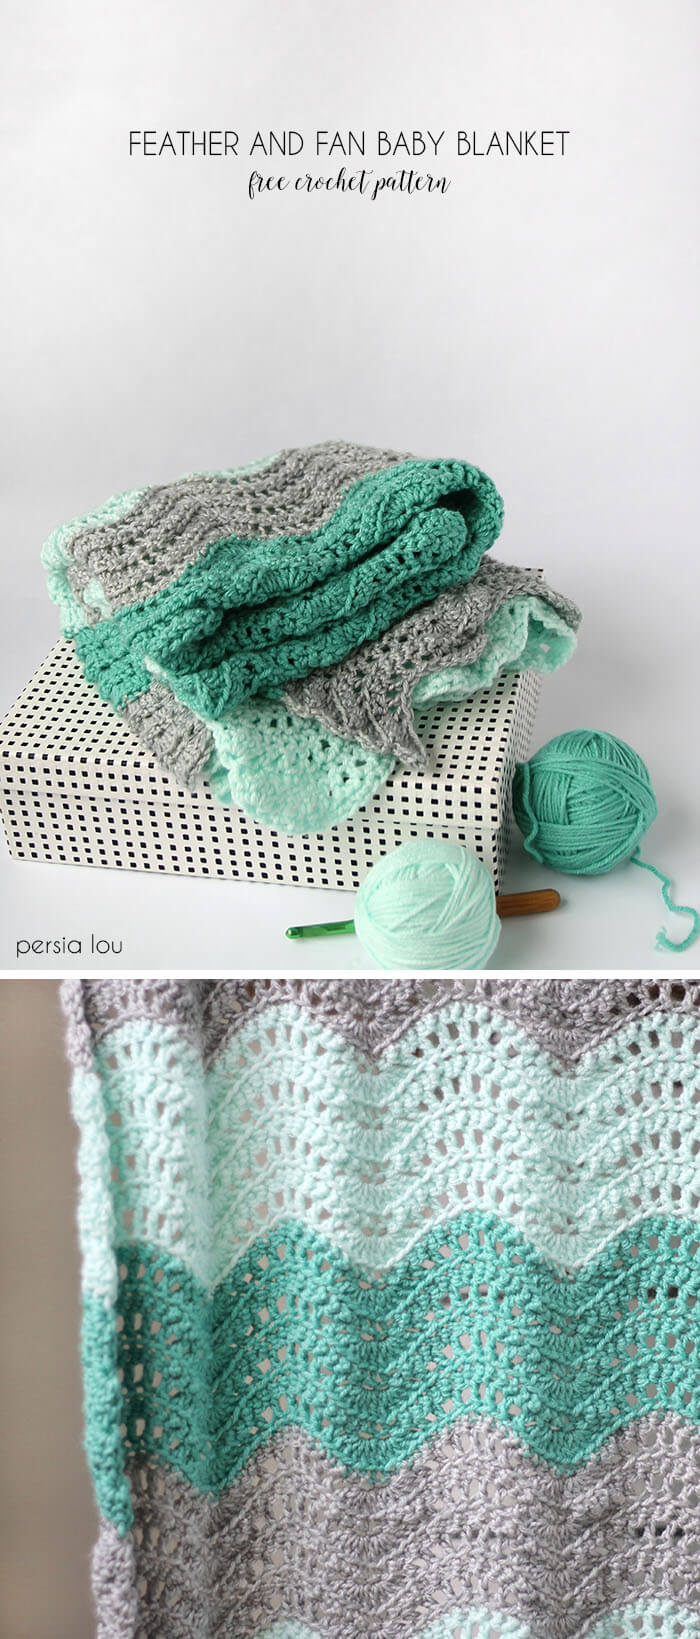 Crochet Baby Blanket Free Pattern Crochet Feather And Fan Ba Blanket Free Pattern Persia Lou